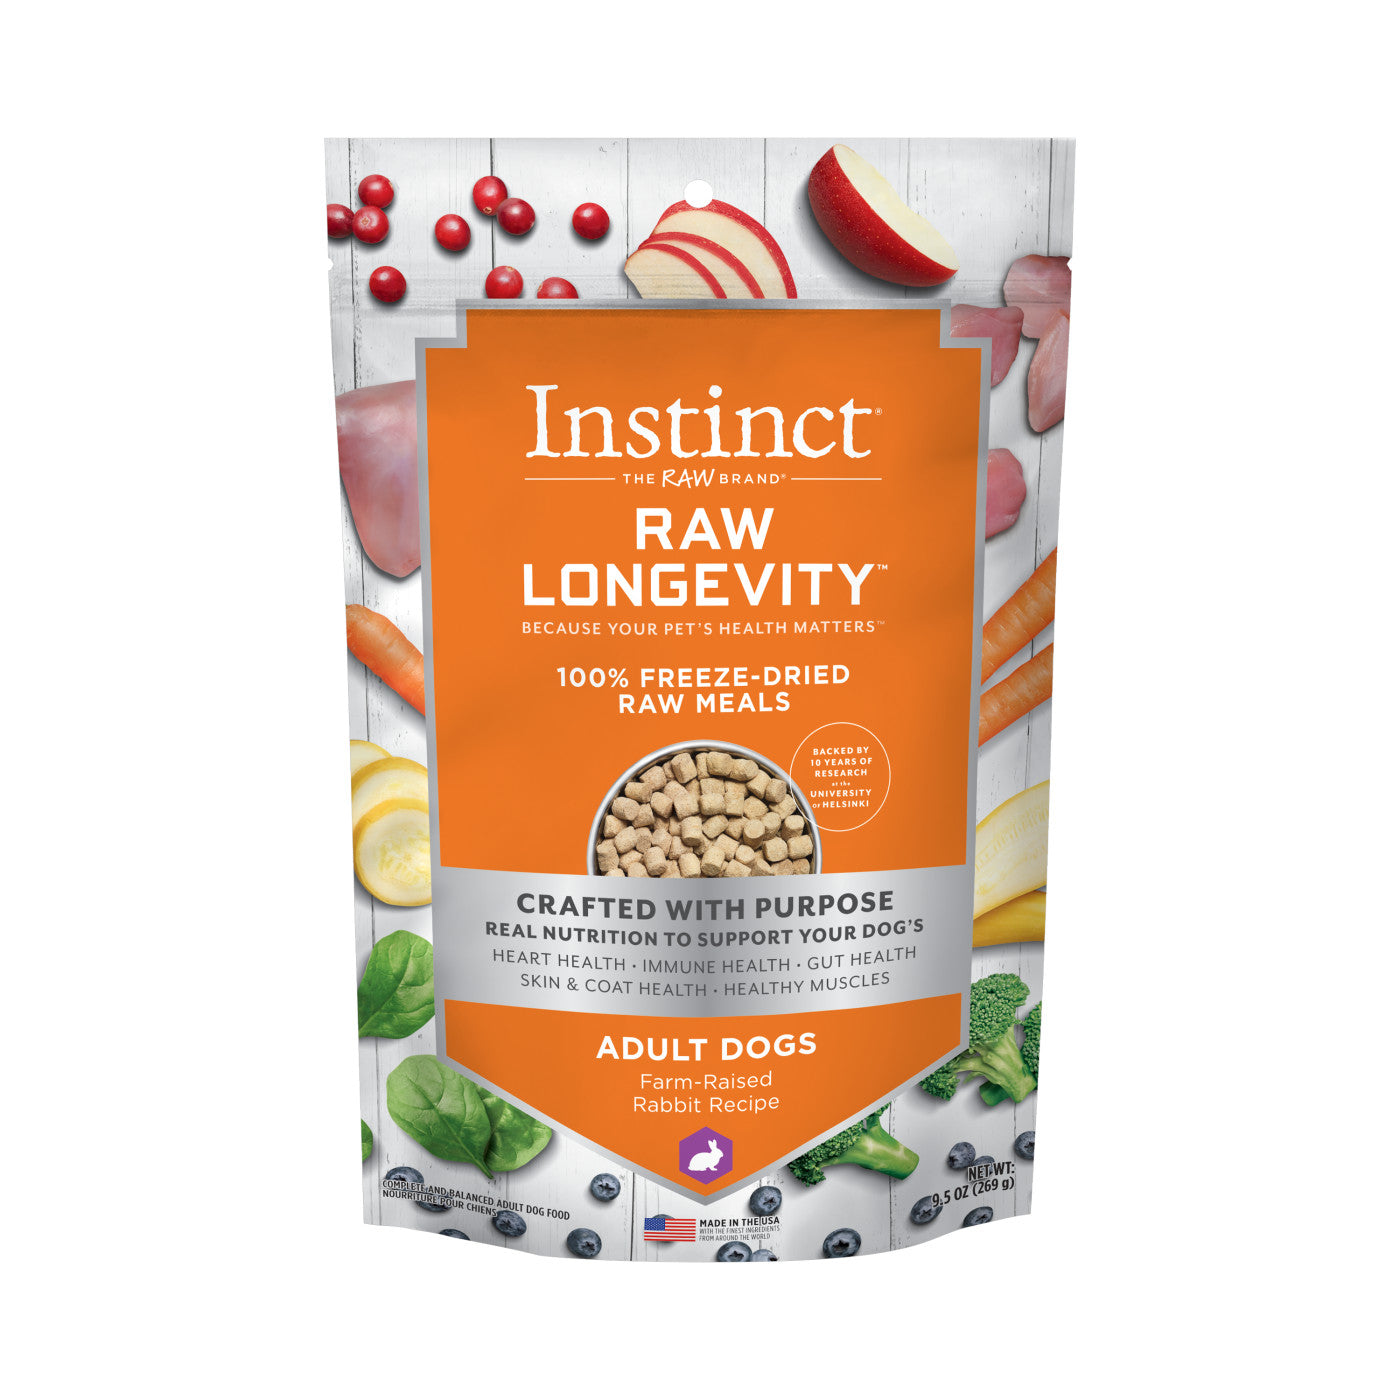 Instinct - Raw Longevity 100% Freeze-Dried Raw Meal - Farm-Raised Rabbit Recipe (For Dogs)